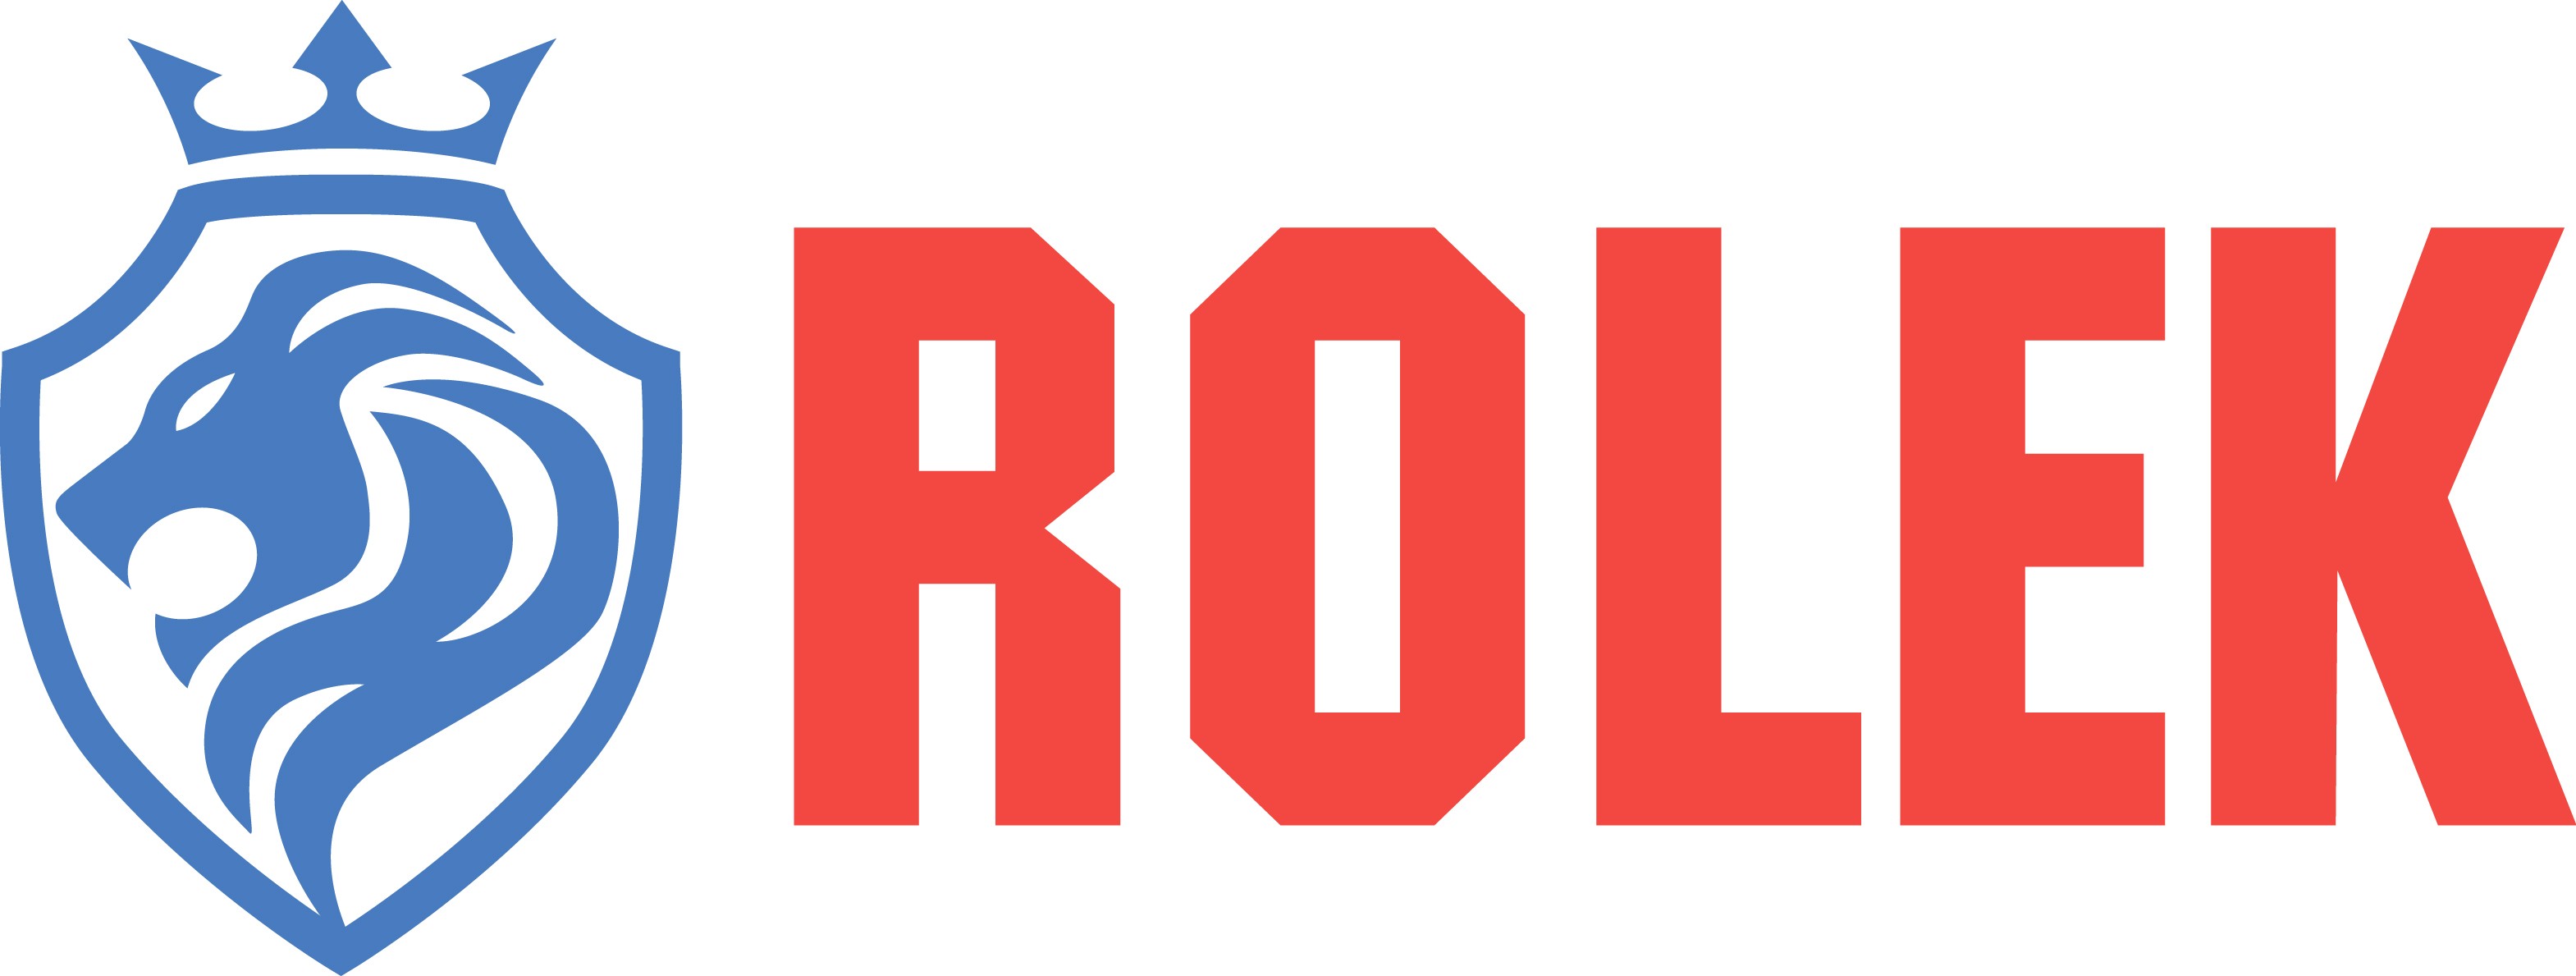 Rolek Bearing Company